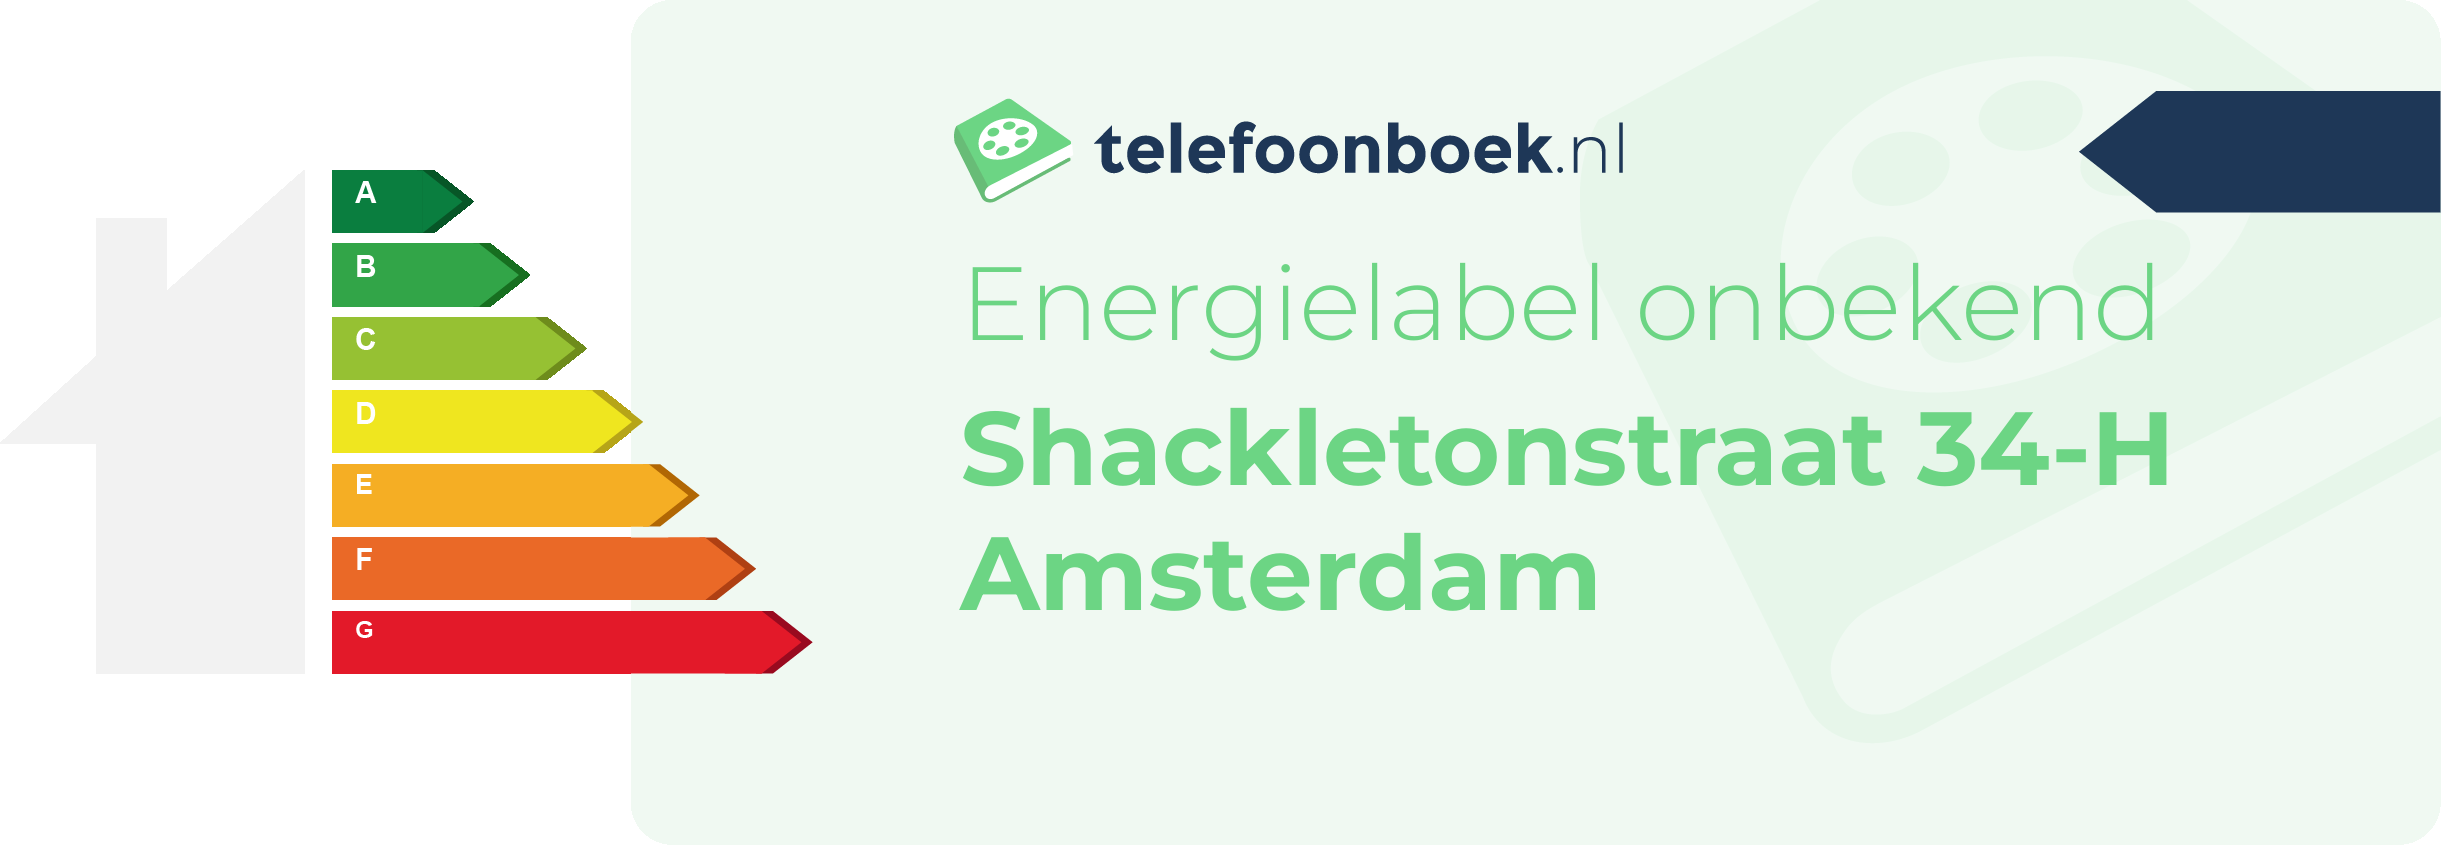 Energielabel Shackletonstraat 34-H Amsterdam